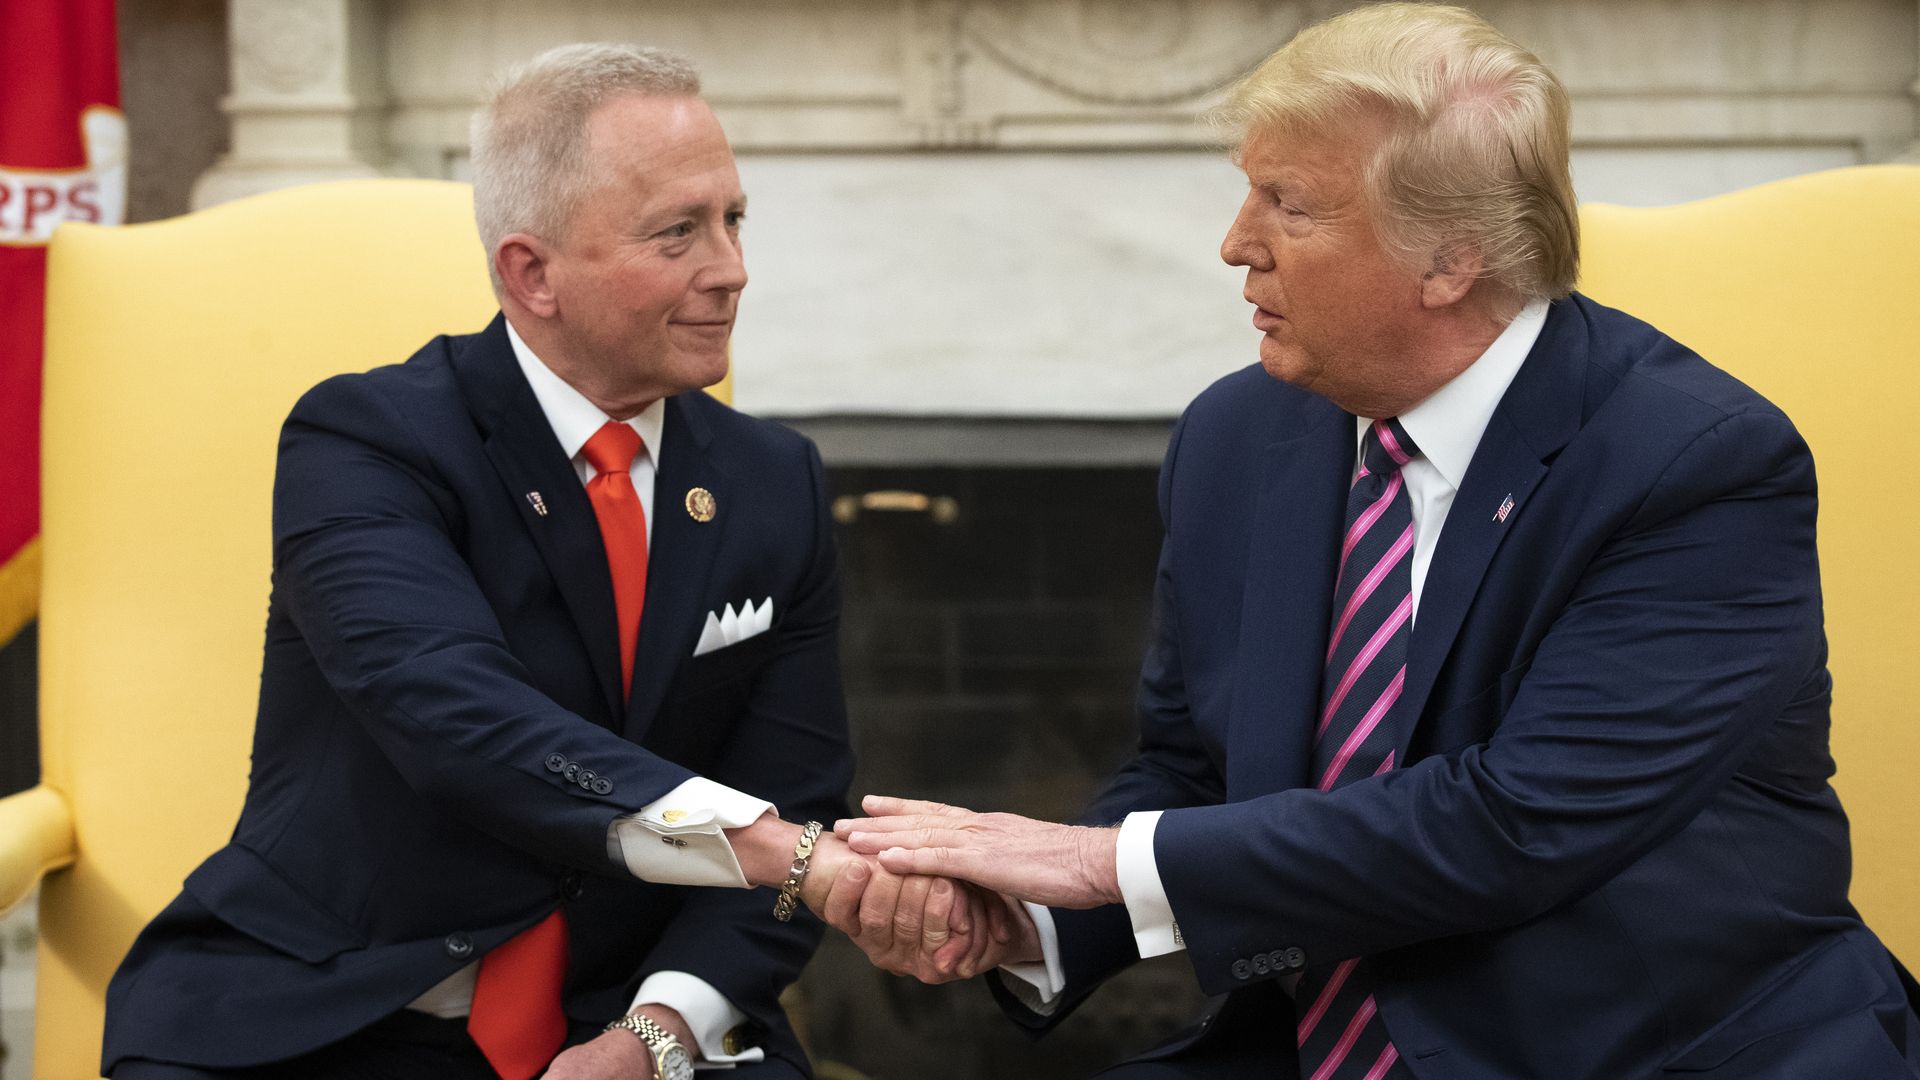 Picture of Rep. Jeff Van Drew shaking hands with Donald Trump